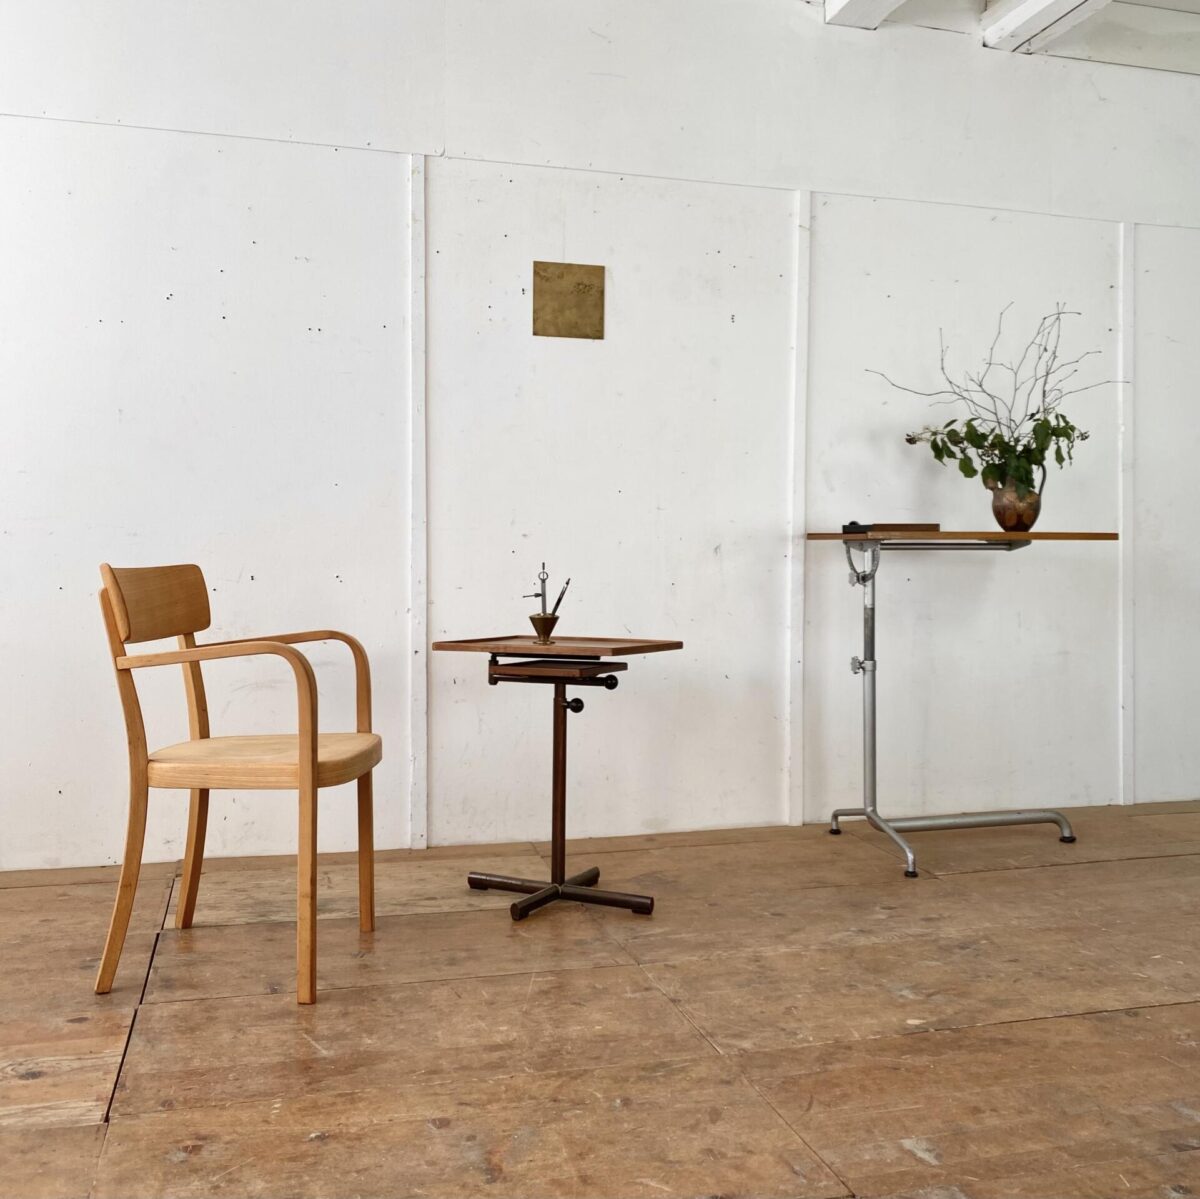 Deuxieme.shop Swiss designklassiker. Höhenverstellbarer Embru Tisch, von Georg Albert Ulysse Caruelle. Der Tisch ist höhenverstellbar von 70 bis 98cm. Die Hauptplatte ist Neigbar und misst 51.5x41.5cm. Das Metallgestell ist Kupferbrüniert, der eine fuss ist ausziehbar. Der Tisch kann vielseitig eingesetzt werden, als Betttisch, Sofa Beistelltisch, Notenständer oder als kleiner Arbeitstisch. Das Nussbaum furnierte Tischblatt hat eine kleine Luftblase bei genauer Betrachtung, ansonsten in schönem Vintage Zustand mit ein paar kleinen Wasserflecken und dem Tintenfass Ring. 